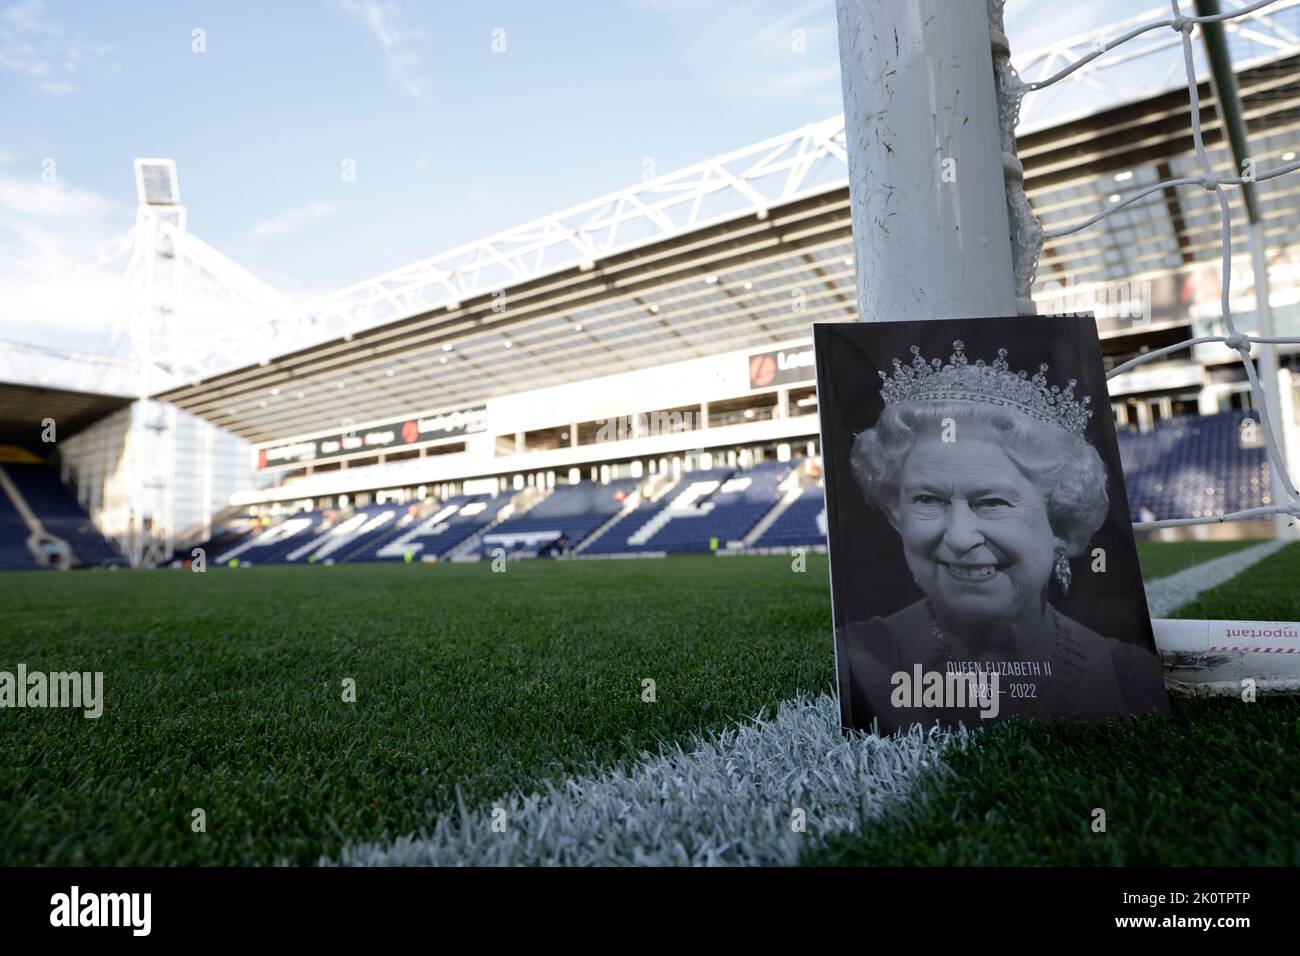 Una vista general del programa oficial de matchday mostrando a la reina Elizabeth II delante del partido Sky Bet Championship en el Deepdale Stadium, Preston. Fecha de la foto: Martes 13 de septiembre de 2022. Foto de stock